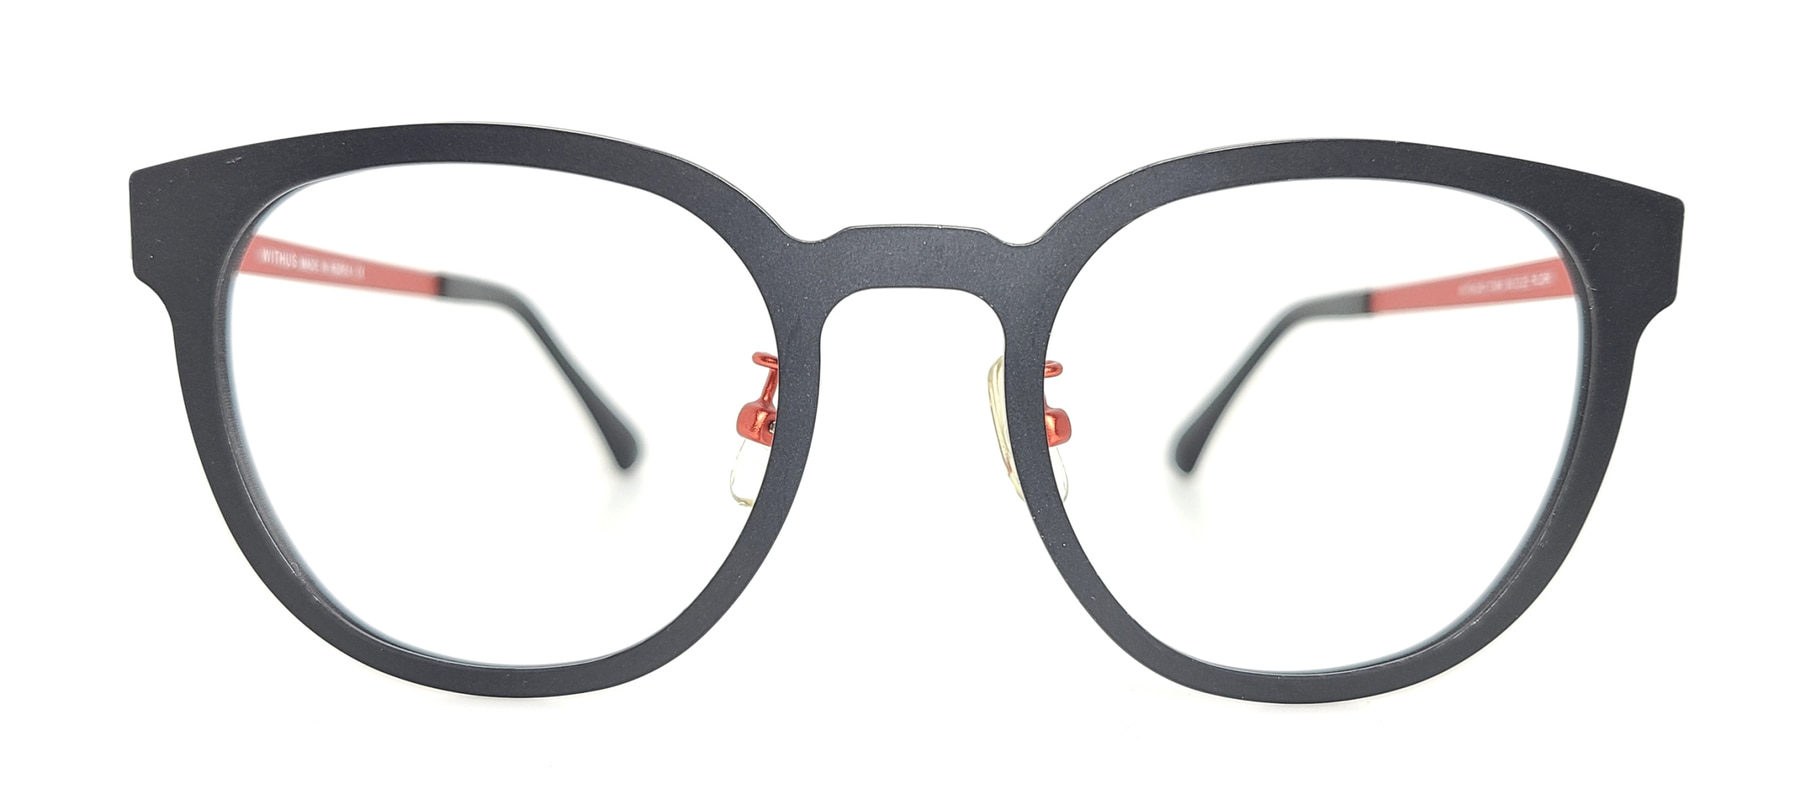 WITHUS-7304, Korean glasses, sunglasses, eyeglasses, glasses